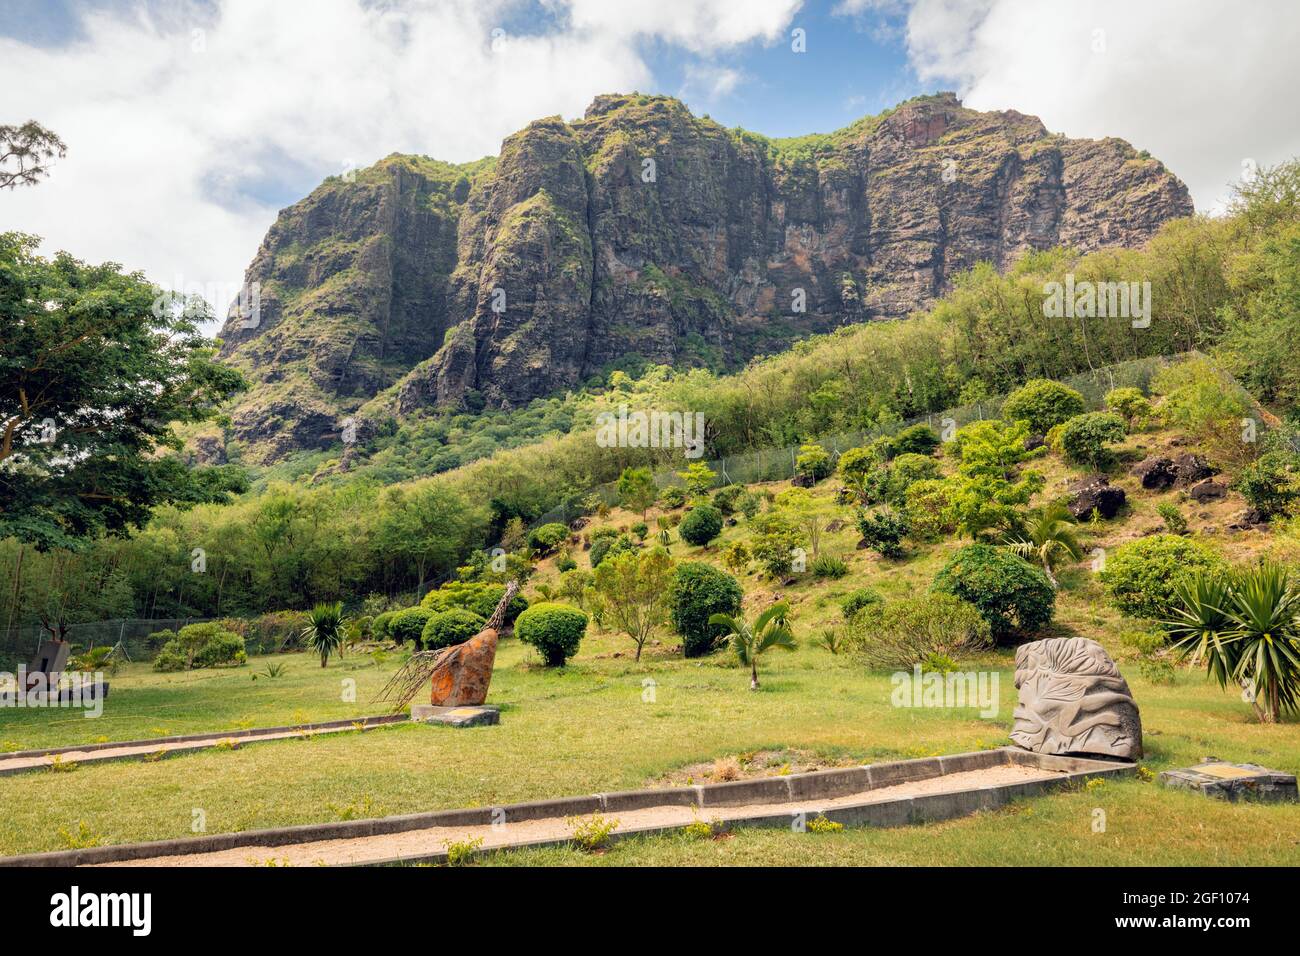 Mauritius, Mascarene-Inseln. Das Denkmal der Sklavenstraße am Fuße des Berges Le Morne Brabant. Der Berg wurde von entflohenen Sklaven als Zufluchtsort genutzt. Stockfoto